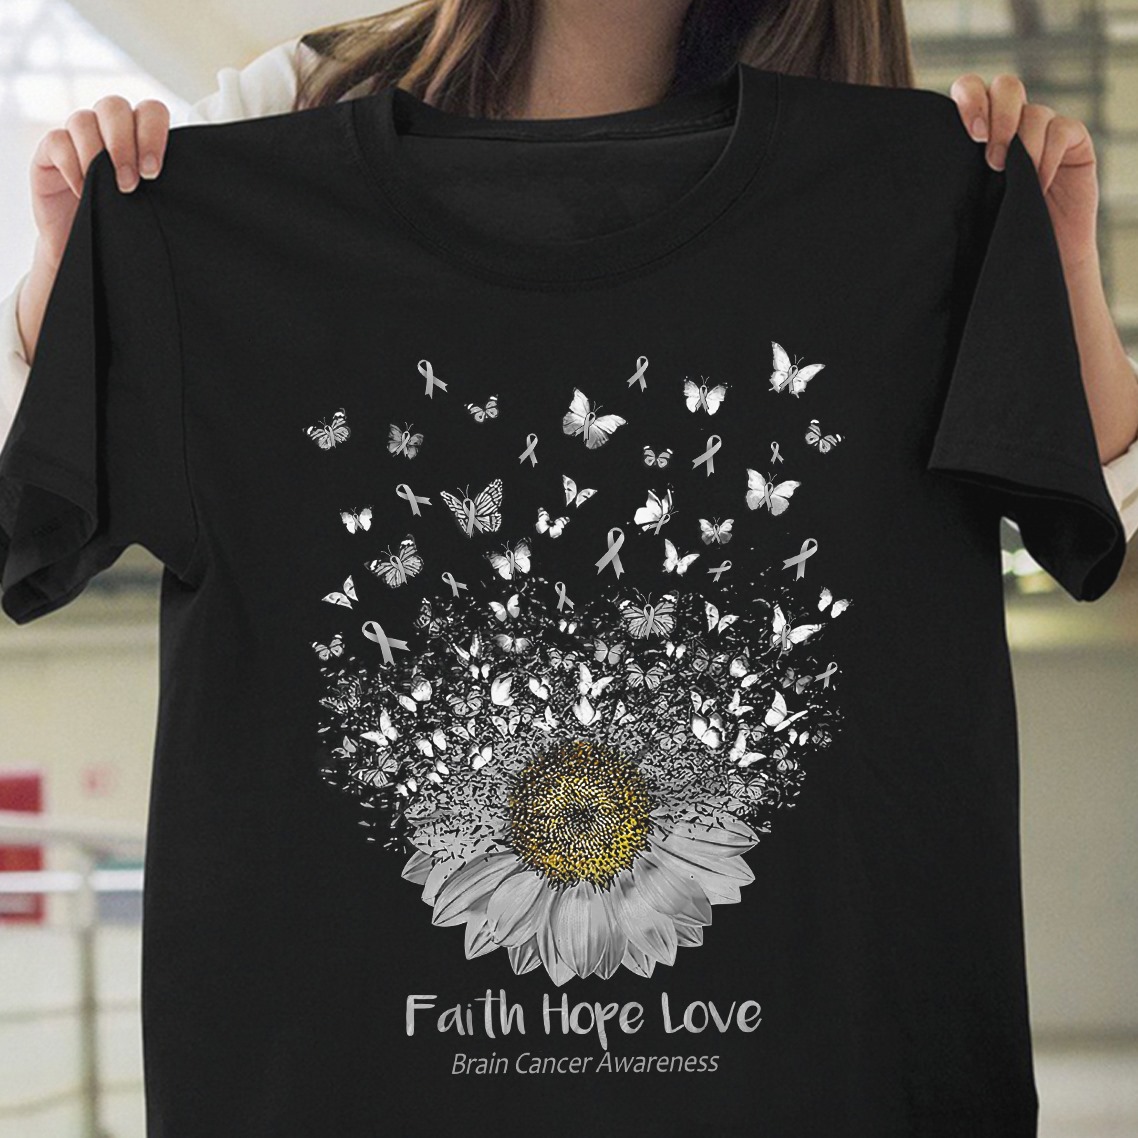 Faith, hope and love - Brain cancer awareness